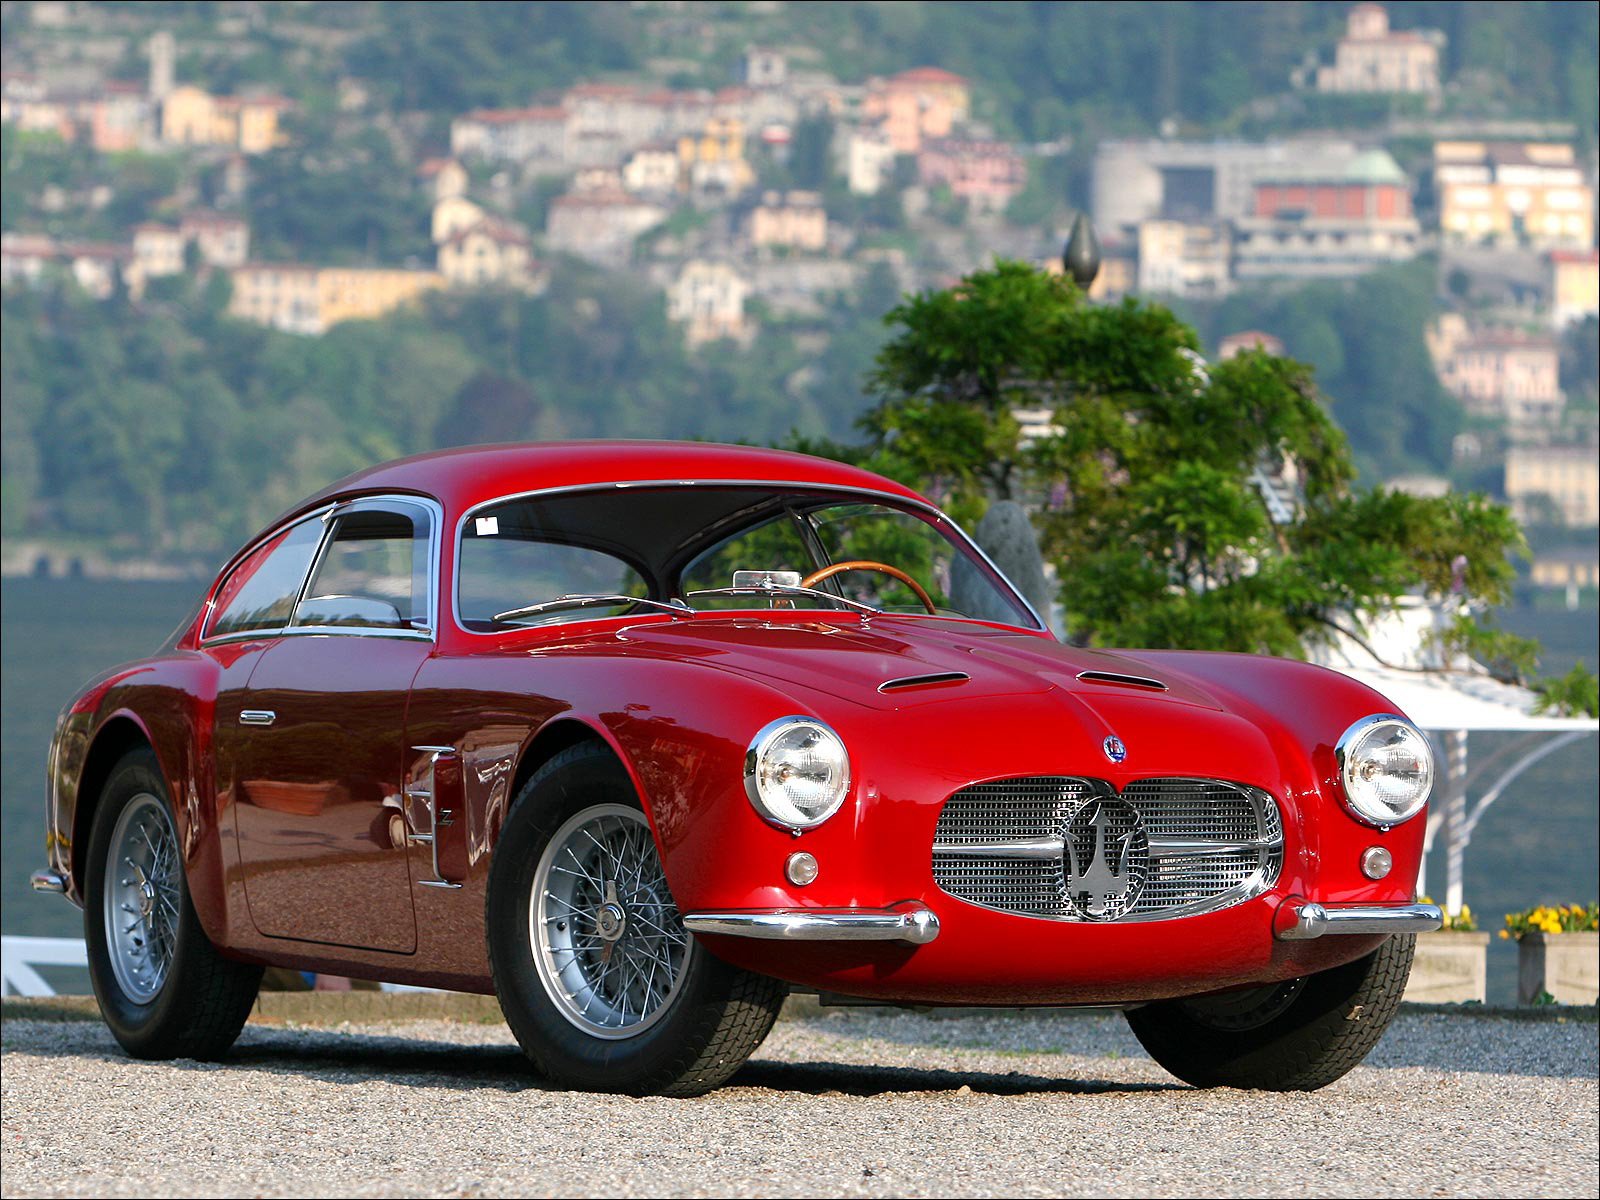 zagato, Maserati, A6g, 2000, Coupe, Cars, 1954 Wallpaper